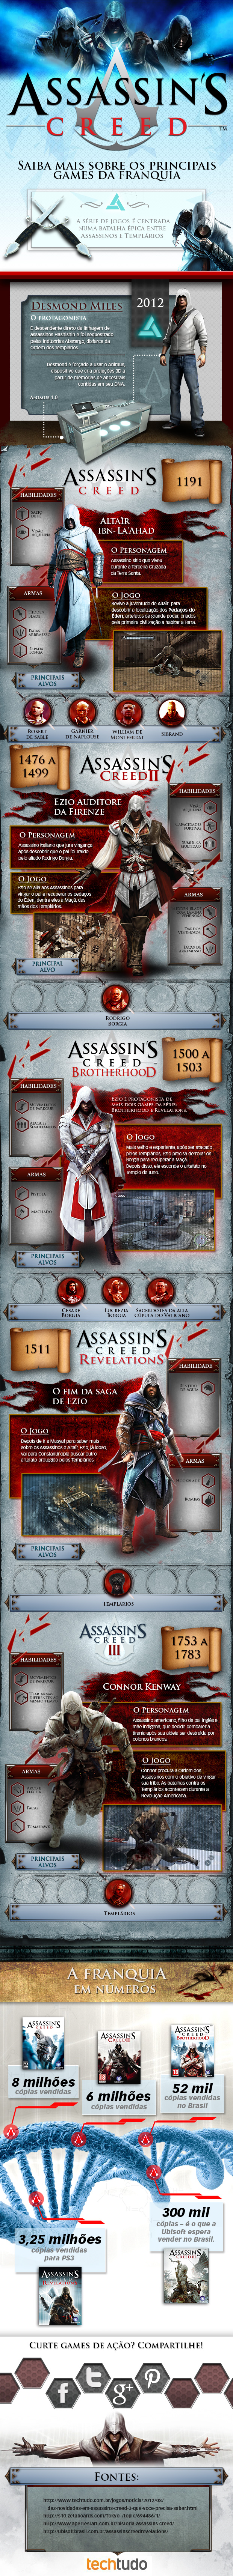 História da série Assassin's Creed